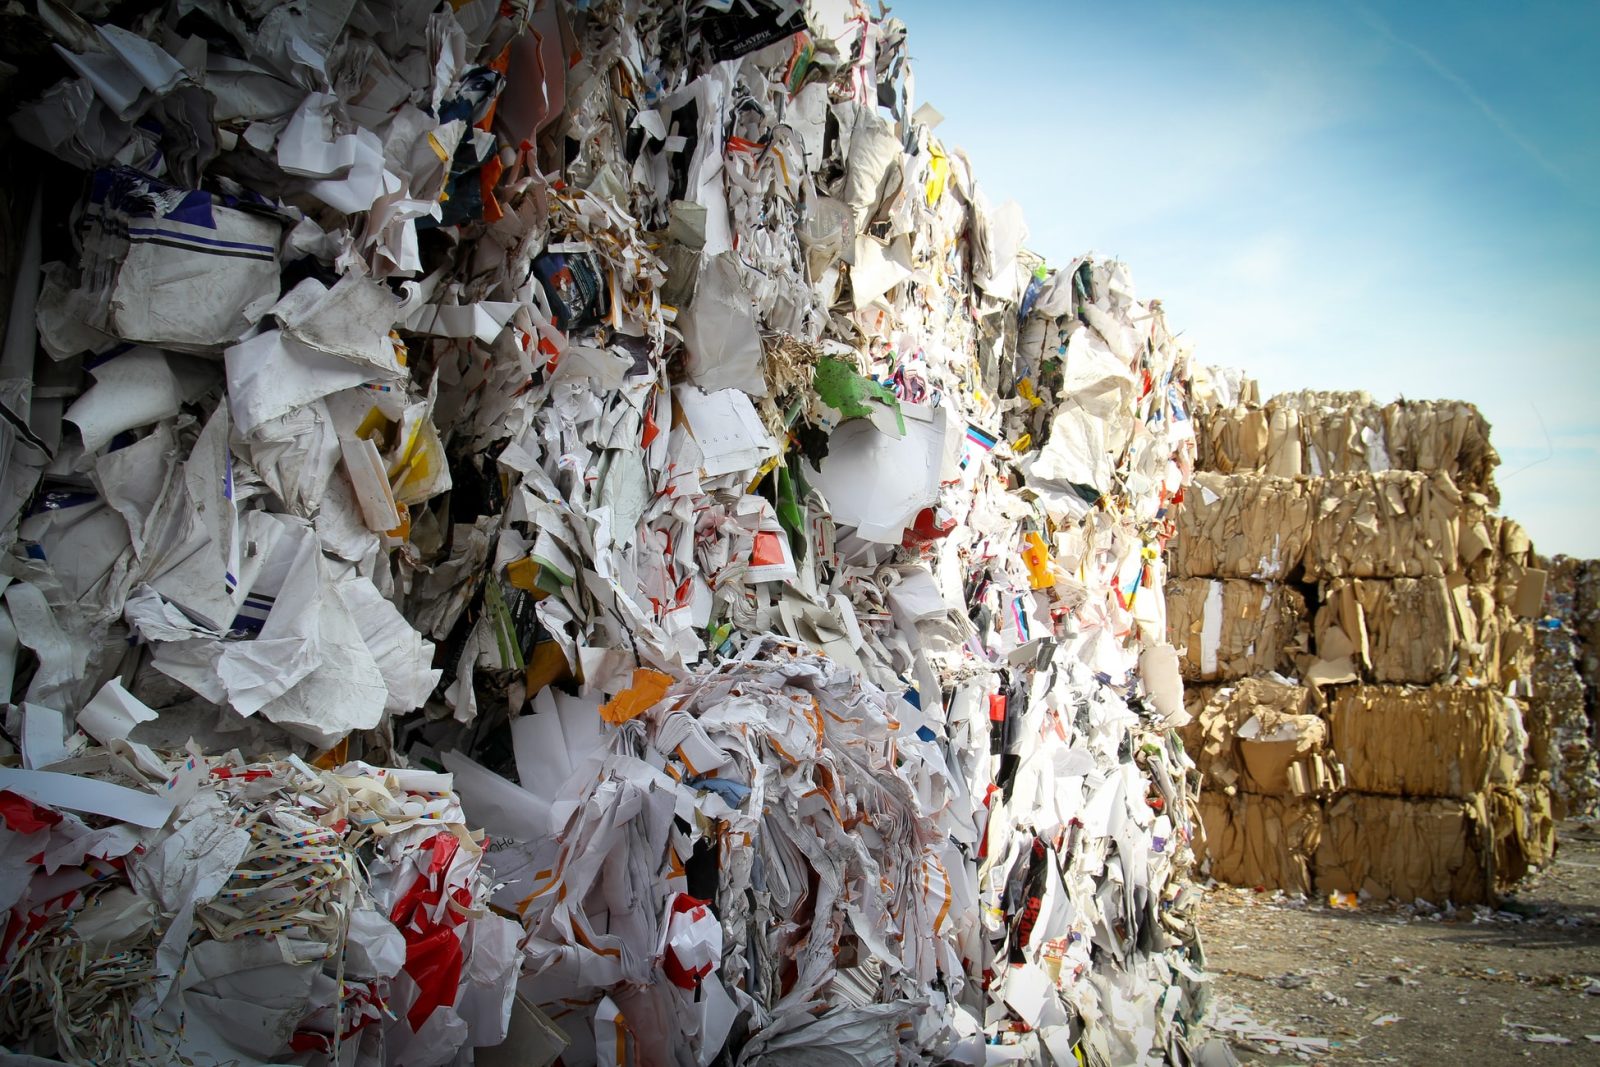 Kuvassa näkyy kaatopaikalle pinottuja valtavia jätekasoja muovia ja pahvia.